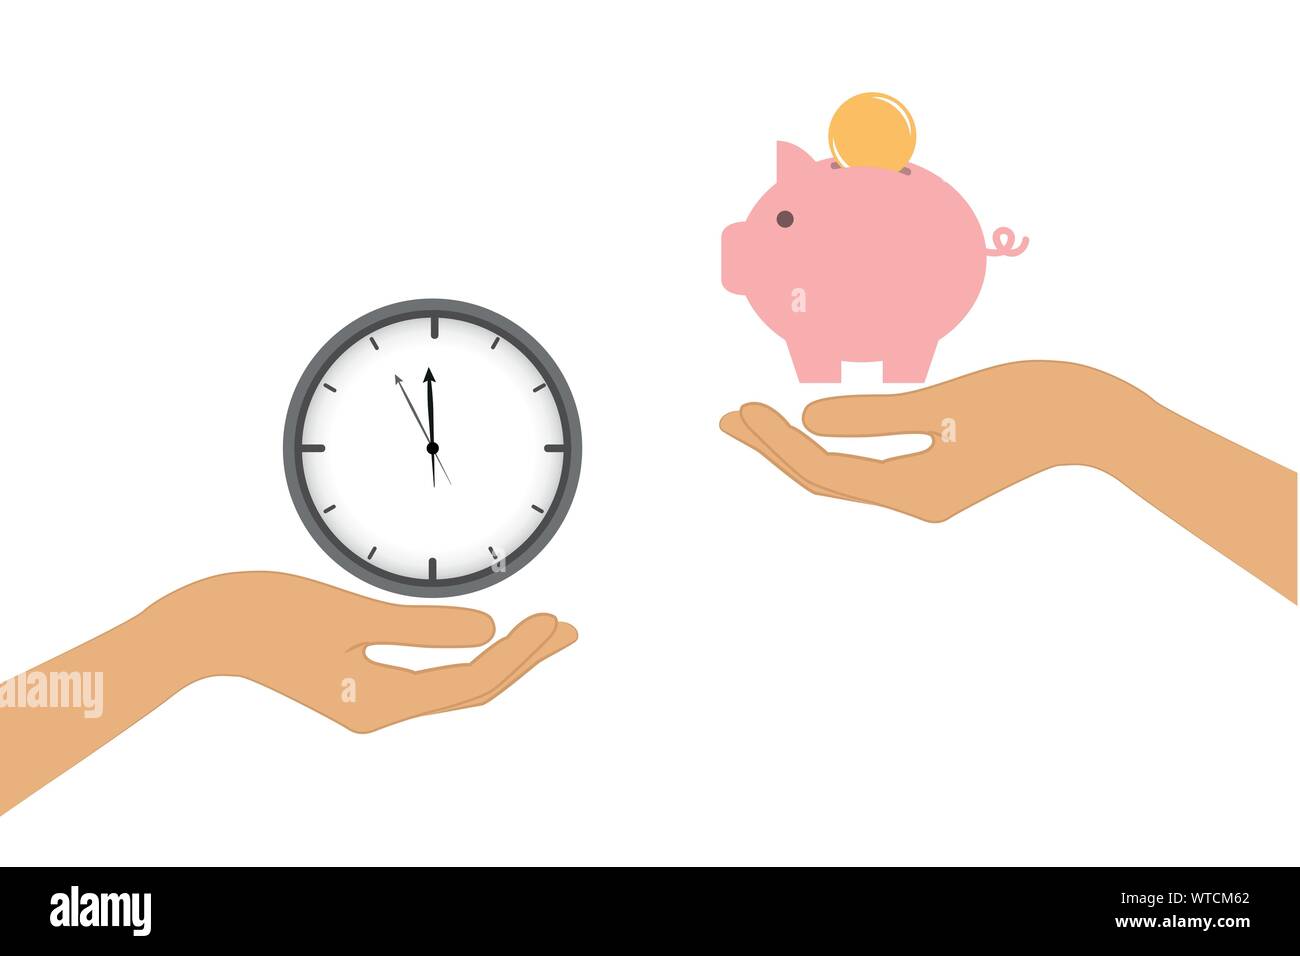 Zeit und Geld wechseln Konzept mit menschlichen Händen Vektor-illustration EPS 10. Stock Vektor